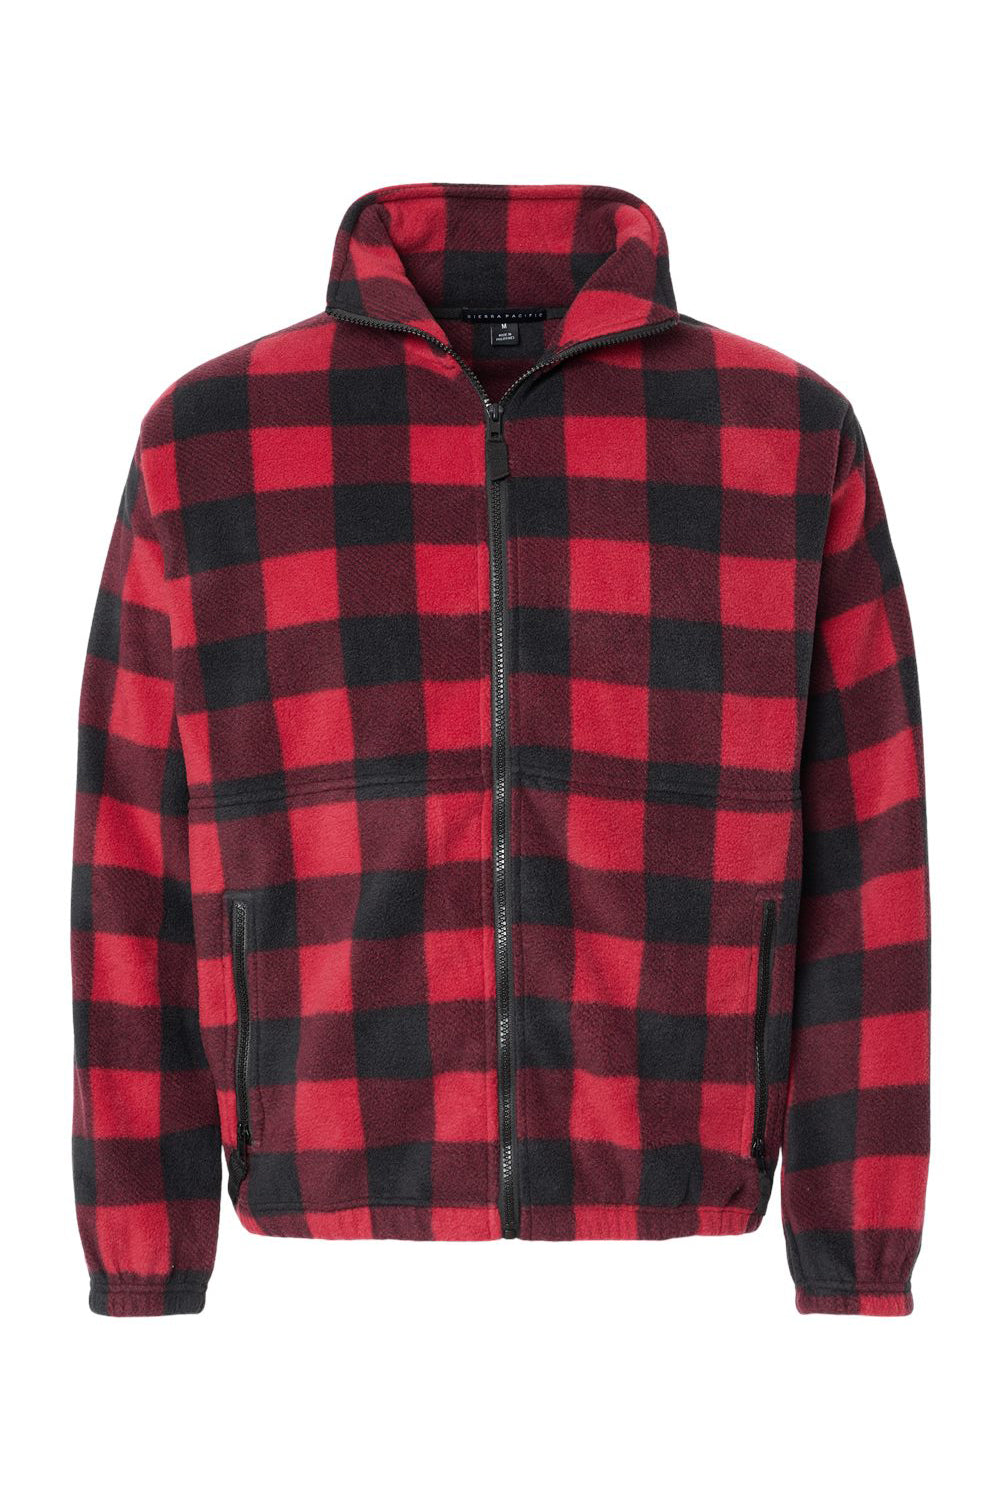 Burnside 3062 Mens Polar Fleece Full Zip Sweatshirt Red/Black Flat Front